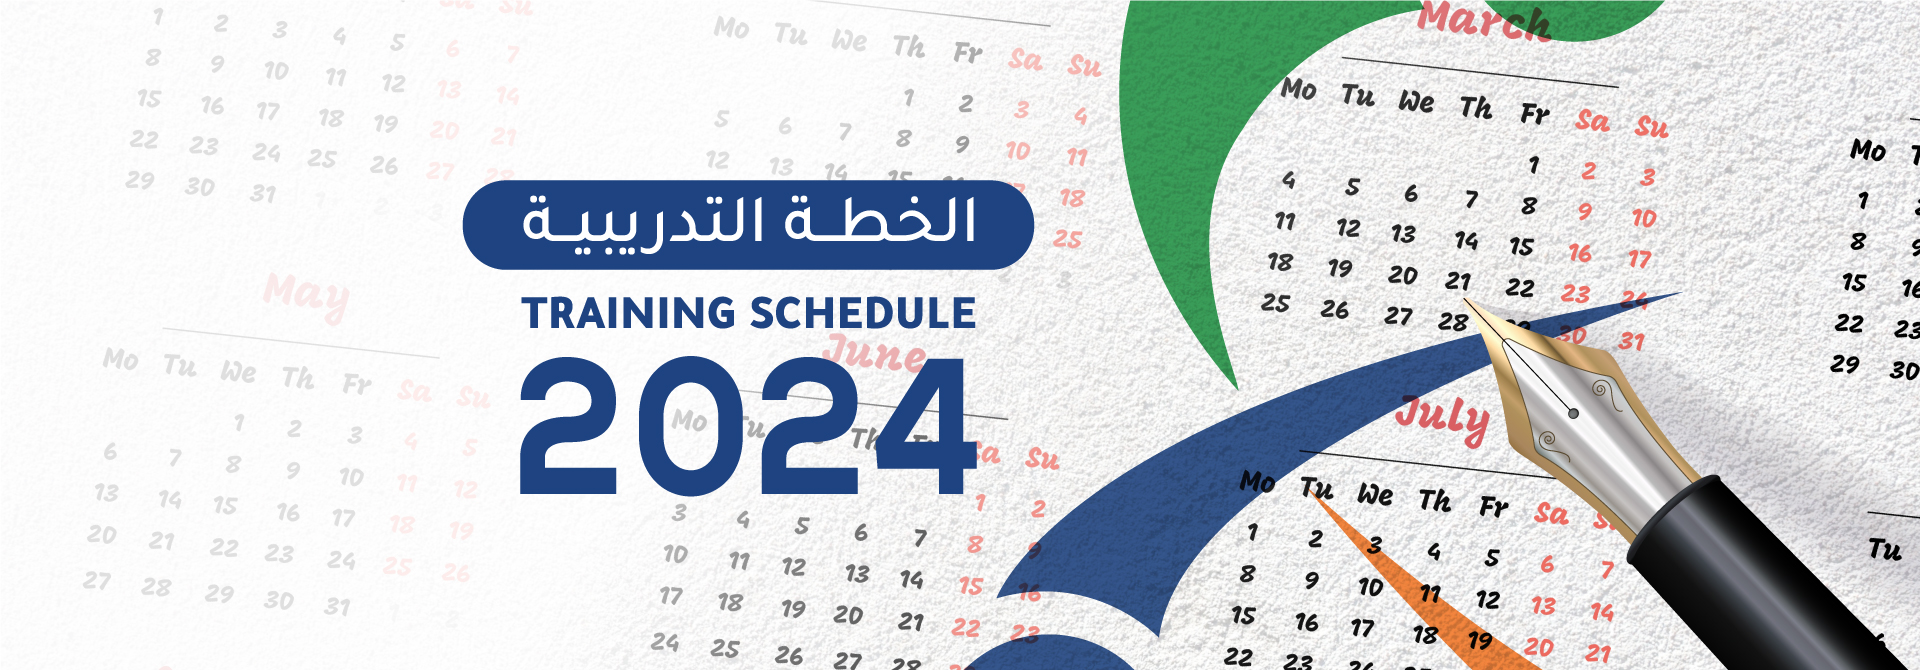 Training Schedule 2024